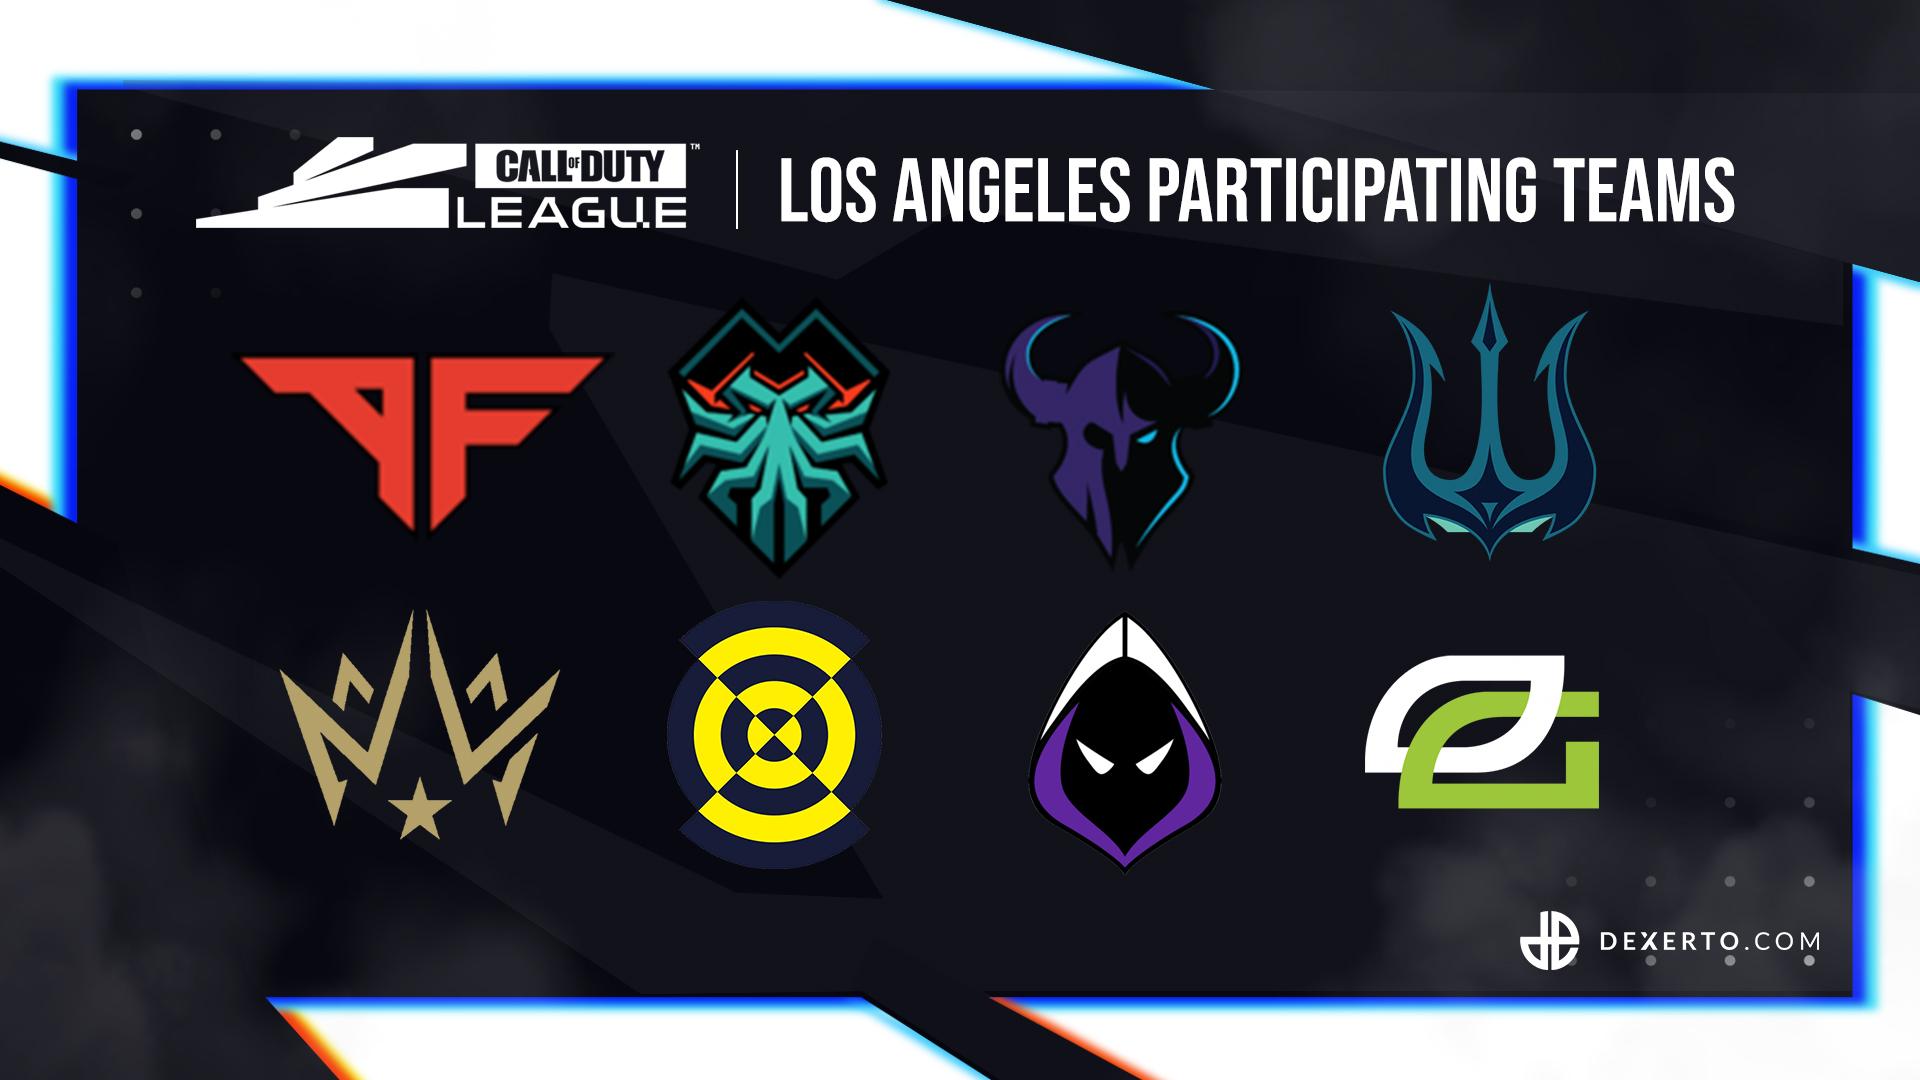 CDL LA's participating teams.